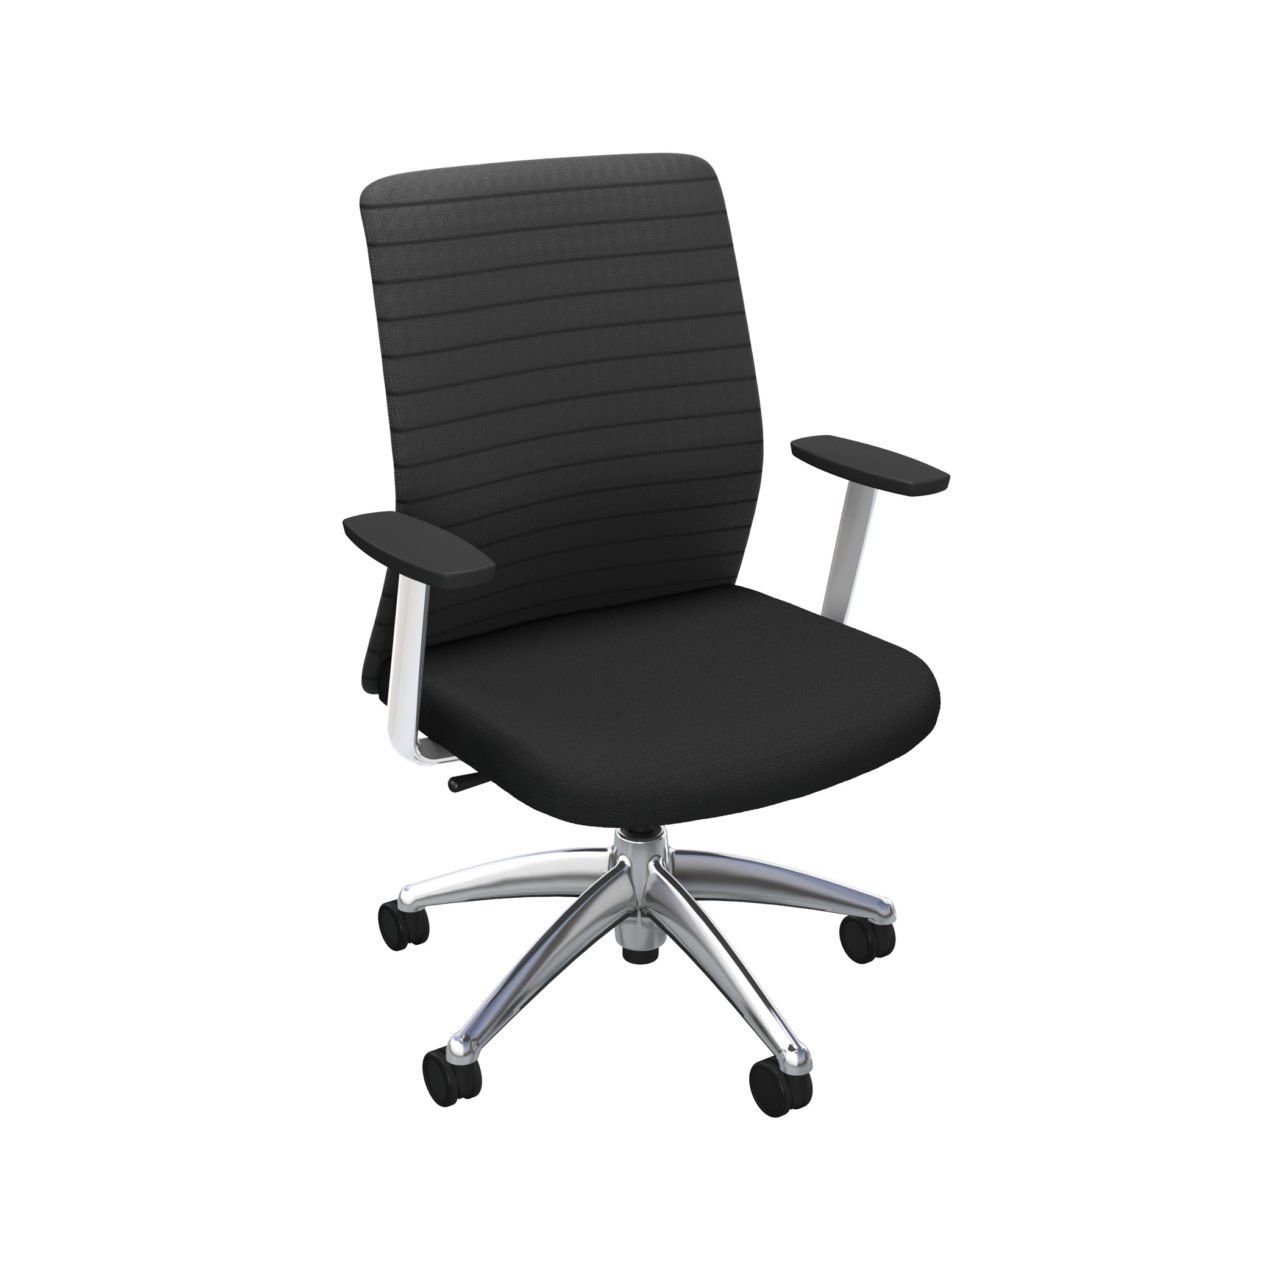 Icentric - chaise de bureau - ergo centric - bras fixes ou réglables_0